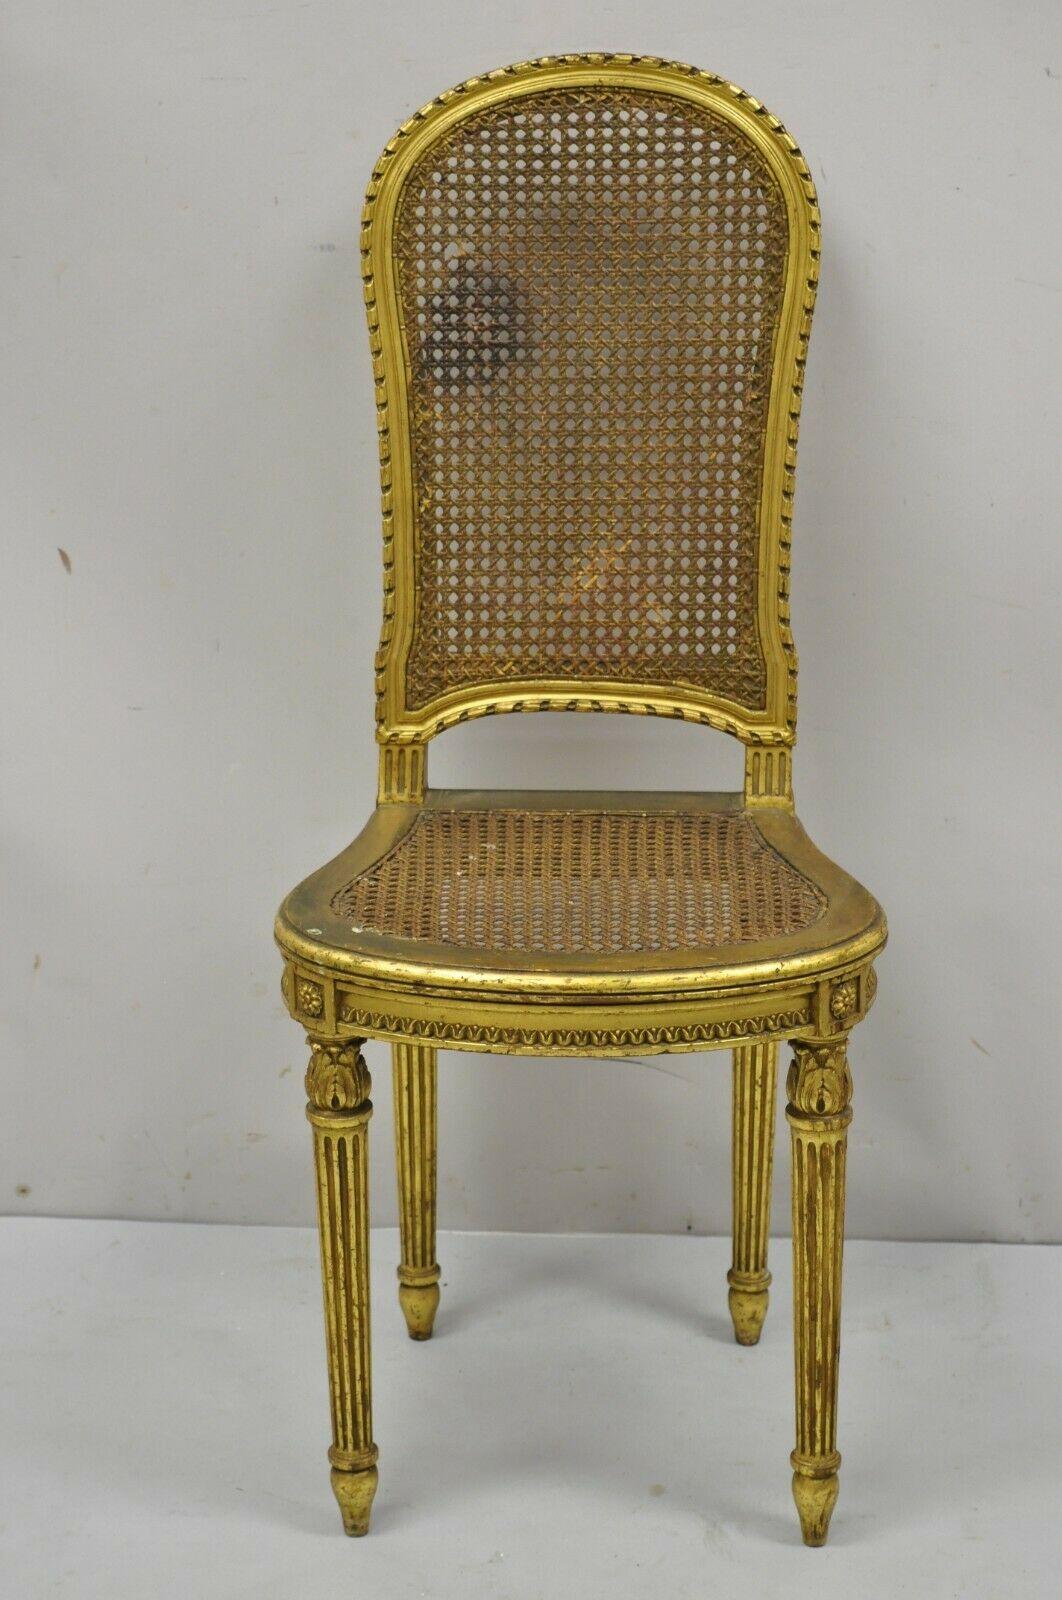 Chaise de boudoir d'appoint victorienne française d'antiquités de style Louis XV en bois doré et rotin. L'article présente une finition dorée et dorée, un dossier et une assise en rotin, un cadre en bois massif, une finition vieillie, des détails